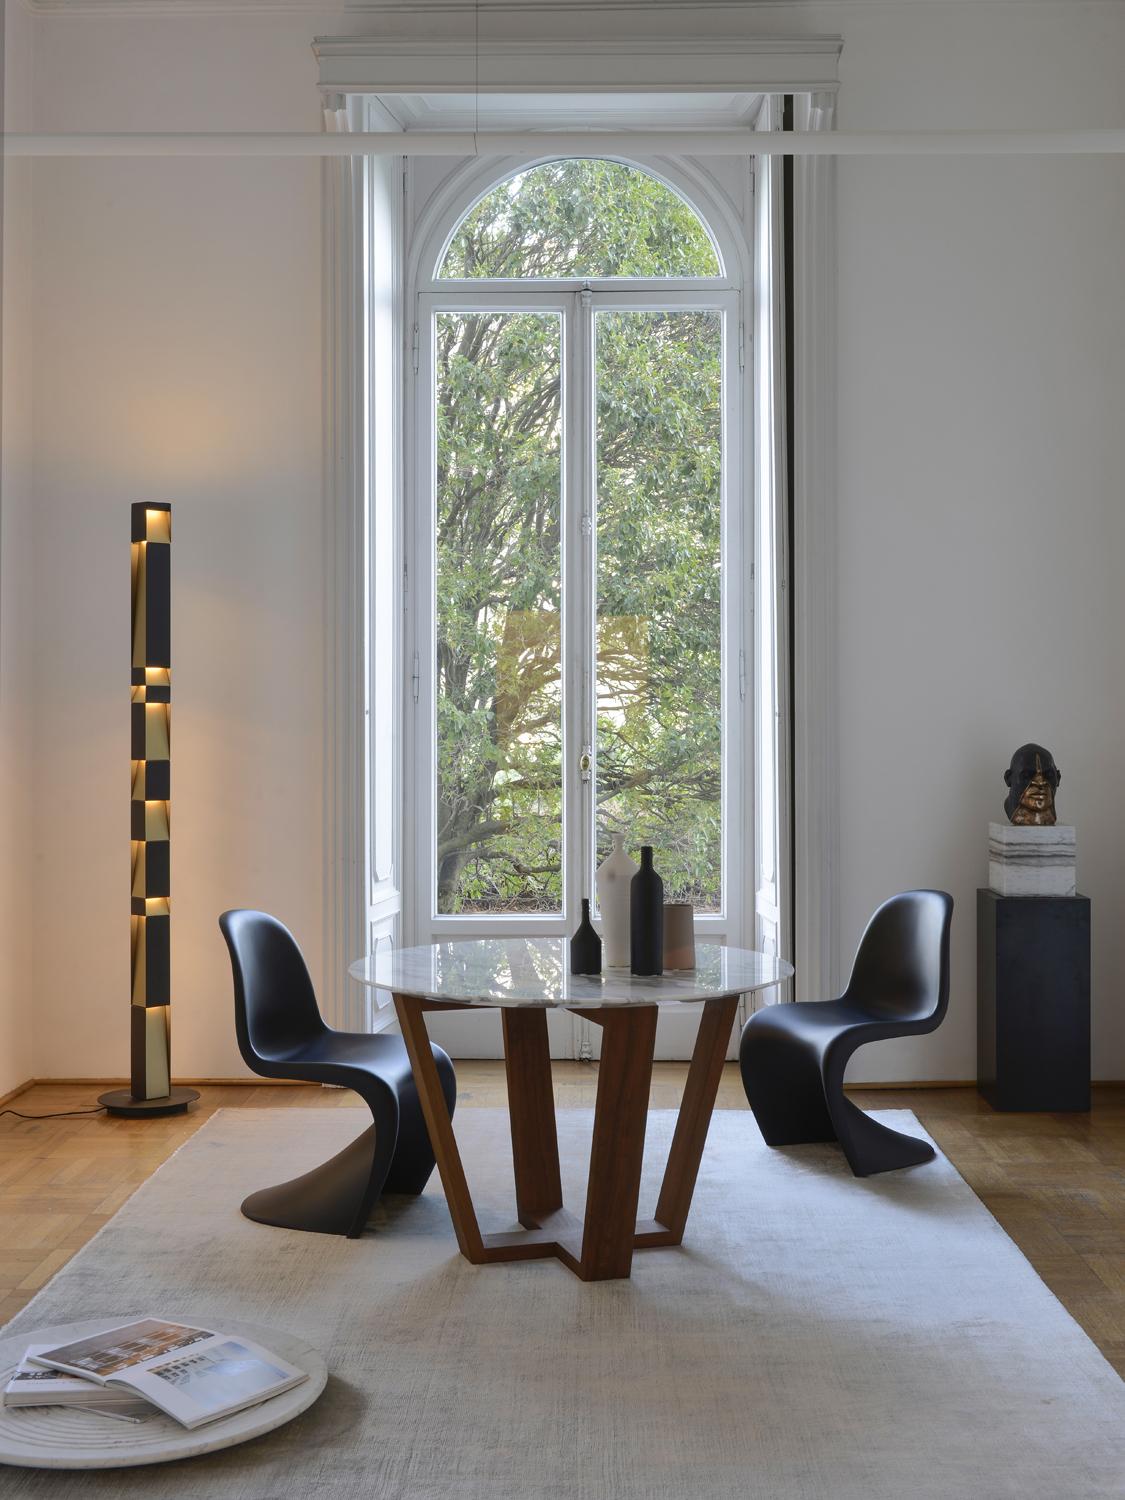 Runder Korbtisch, ein einzigartiger Esstisch aus Carrara-Marmor und Teakholz, der in verschiedenen Größen entworfen wurde, entweder für ein intimeres Gespräch oder für eine Reihe von Personen. Die Struktur aus Teakholz macht sie auch perfekt für den